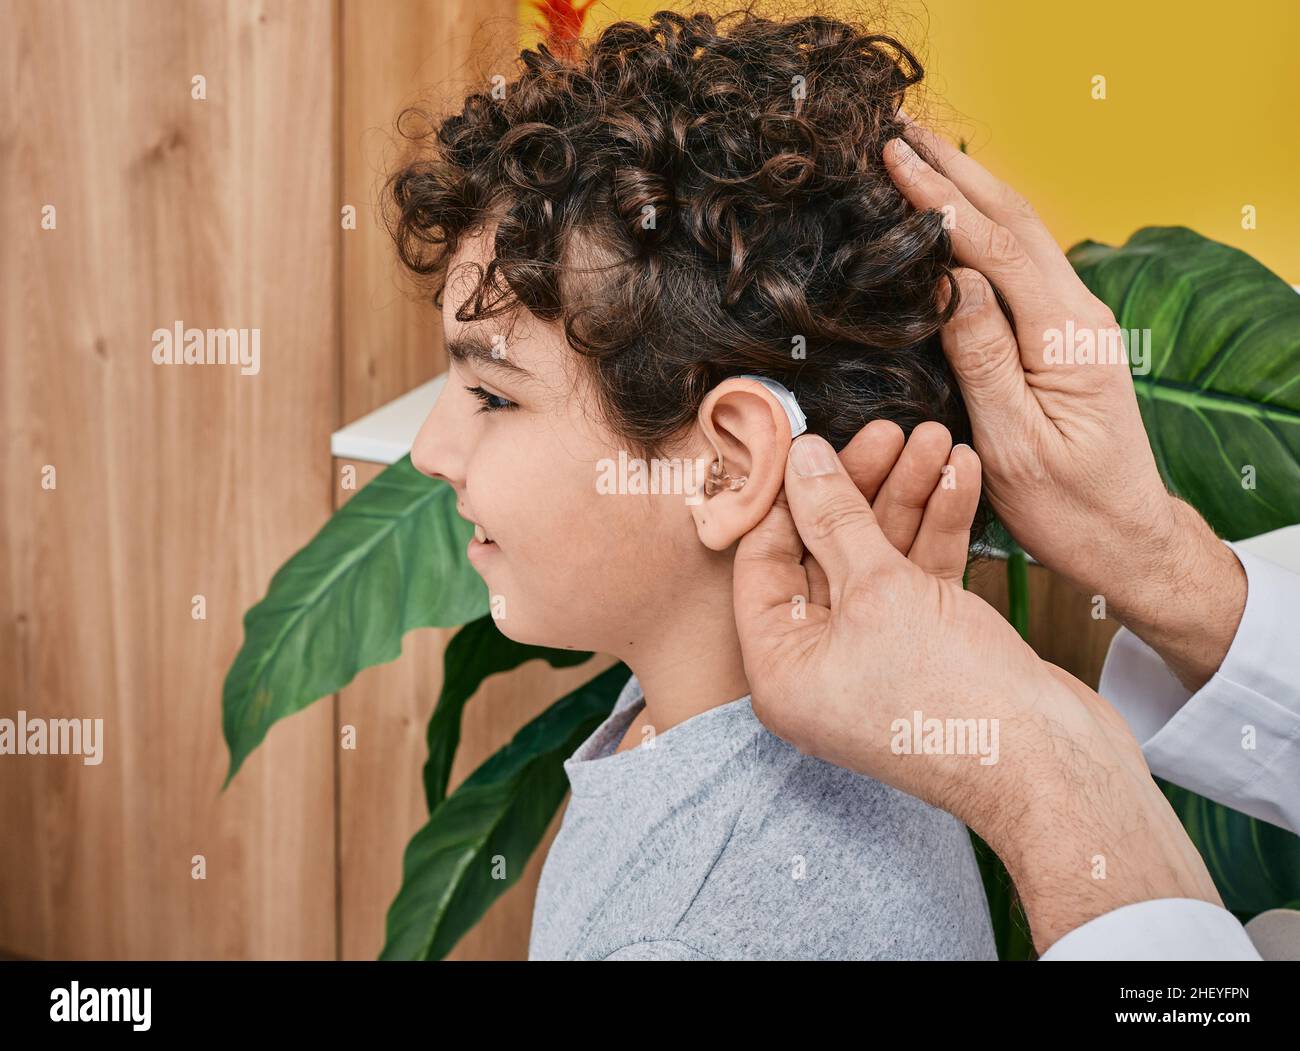 Solutions auditives pour enfants.Un audiologiste tient une prothèse auditive sur l'oreille d'un enfant pendant qu'il se rend dans une clinique d'audition Banque D'Images